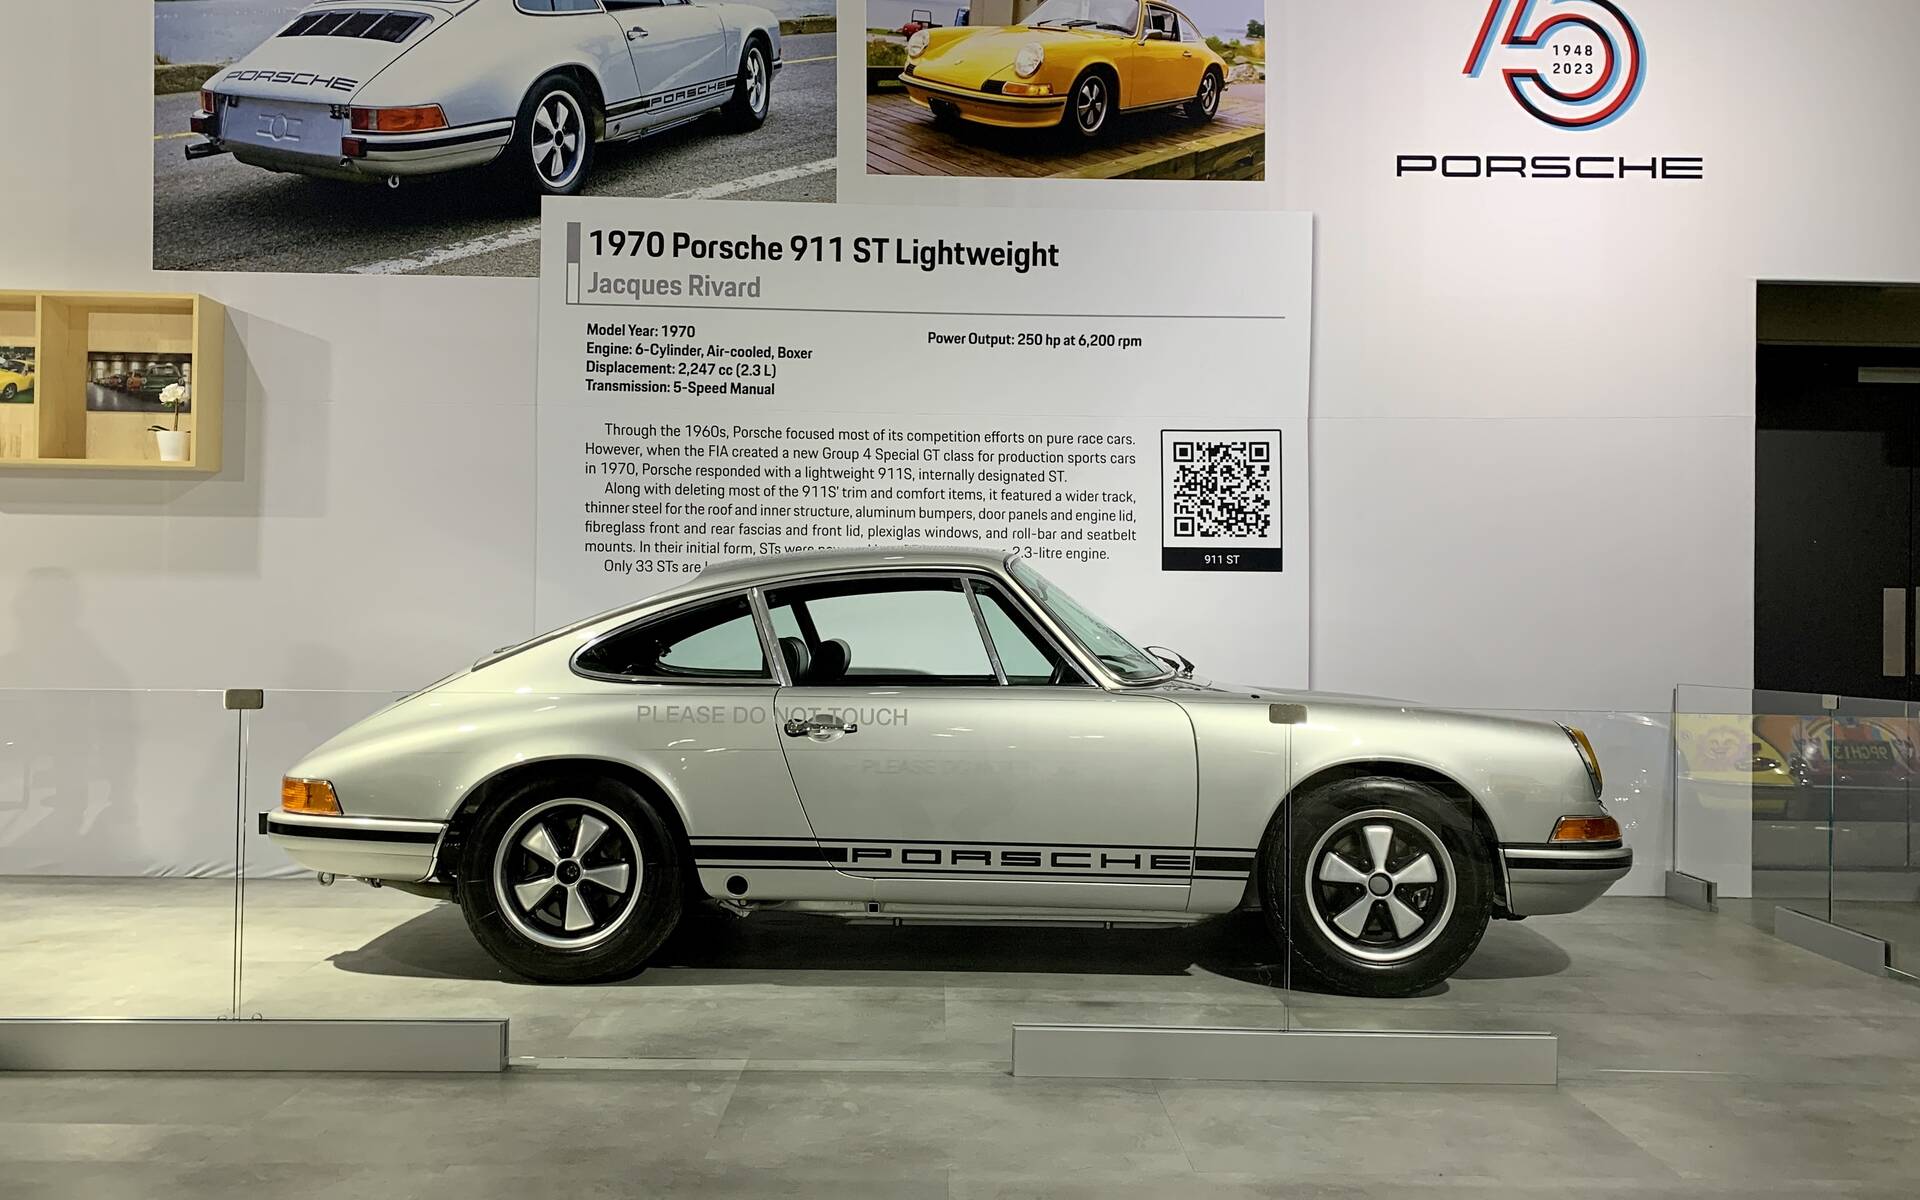 <p><strong>Porsche 911 ST Lightweight 1970</strong></p>